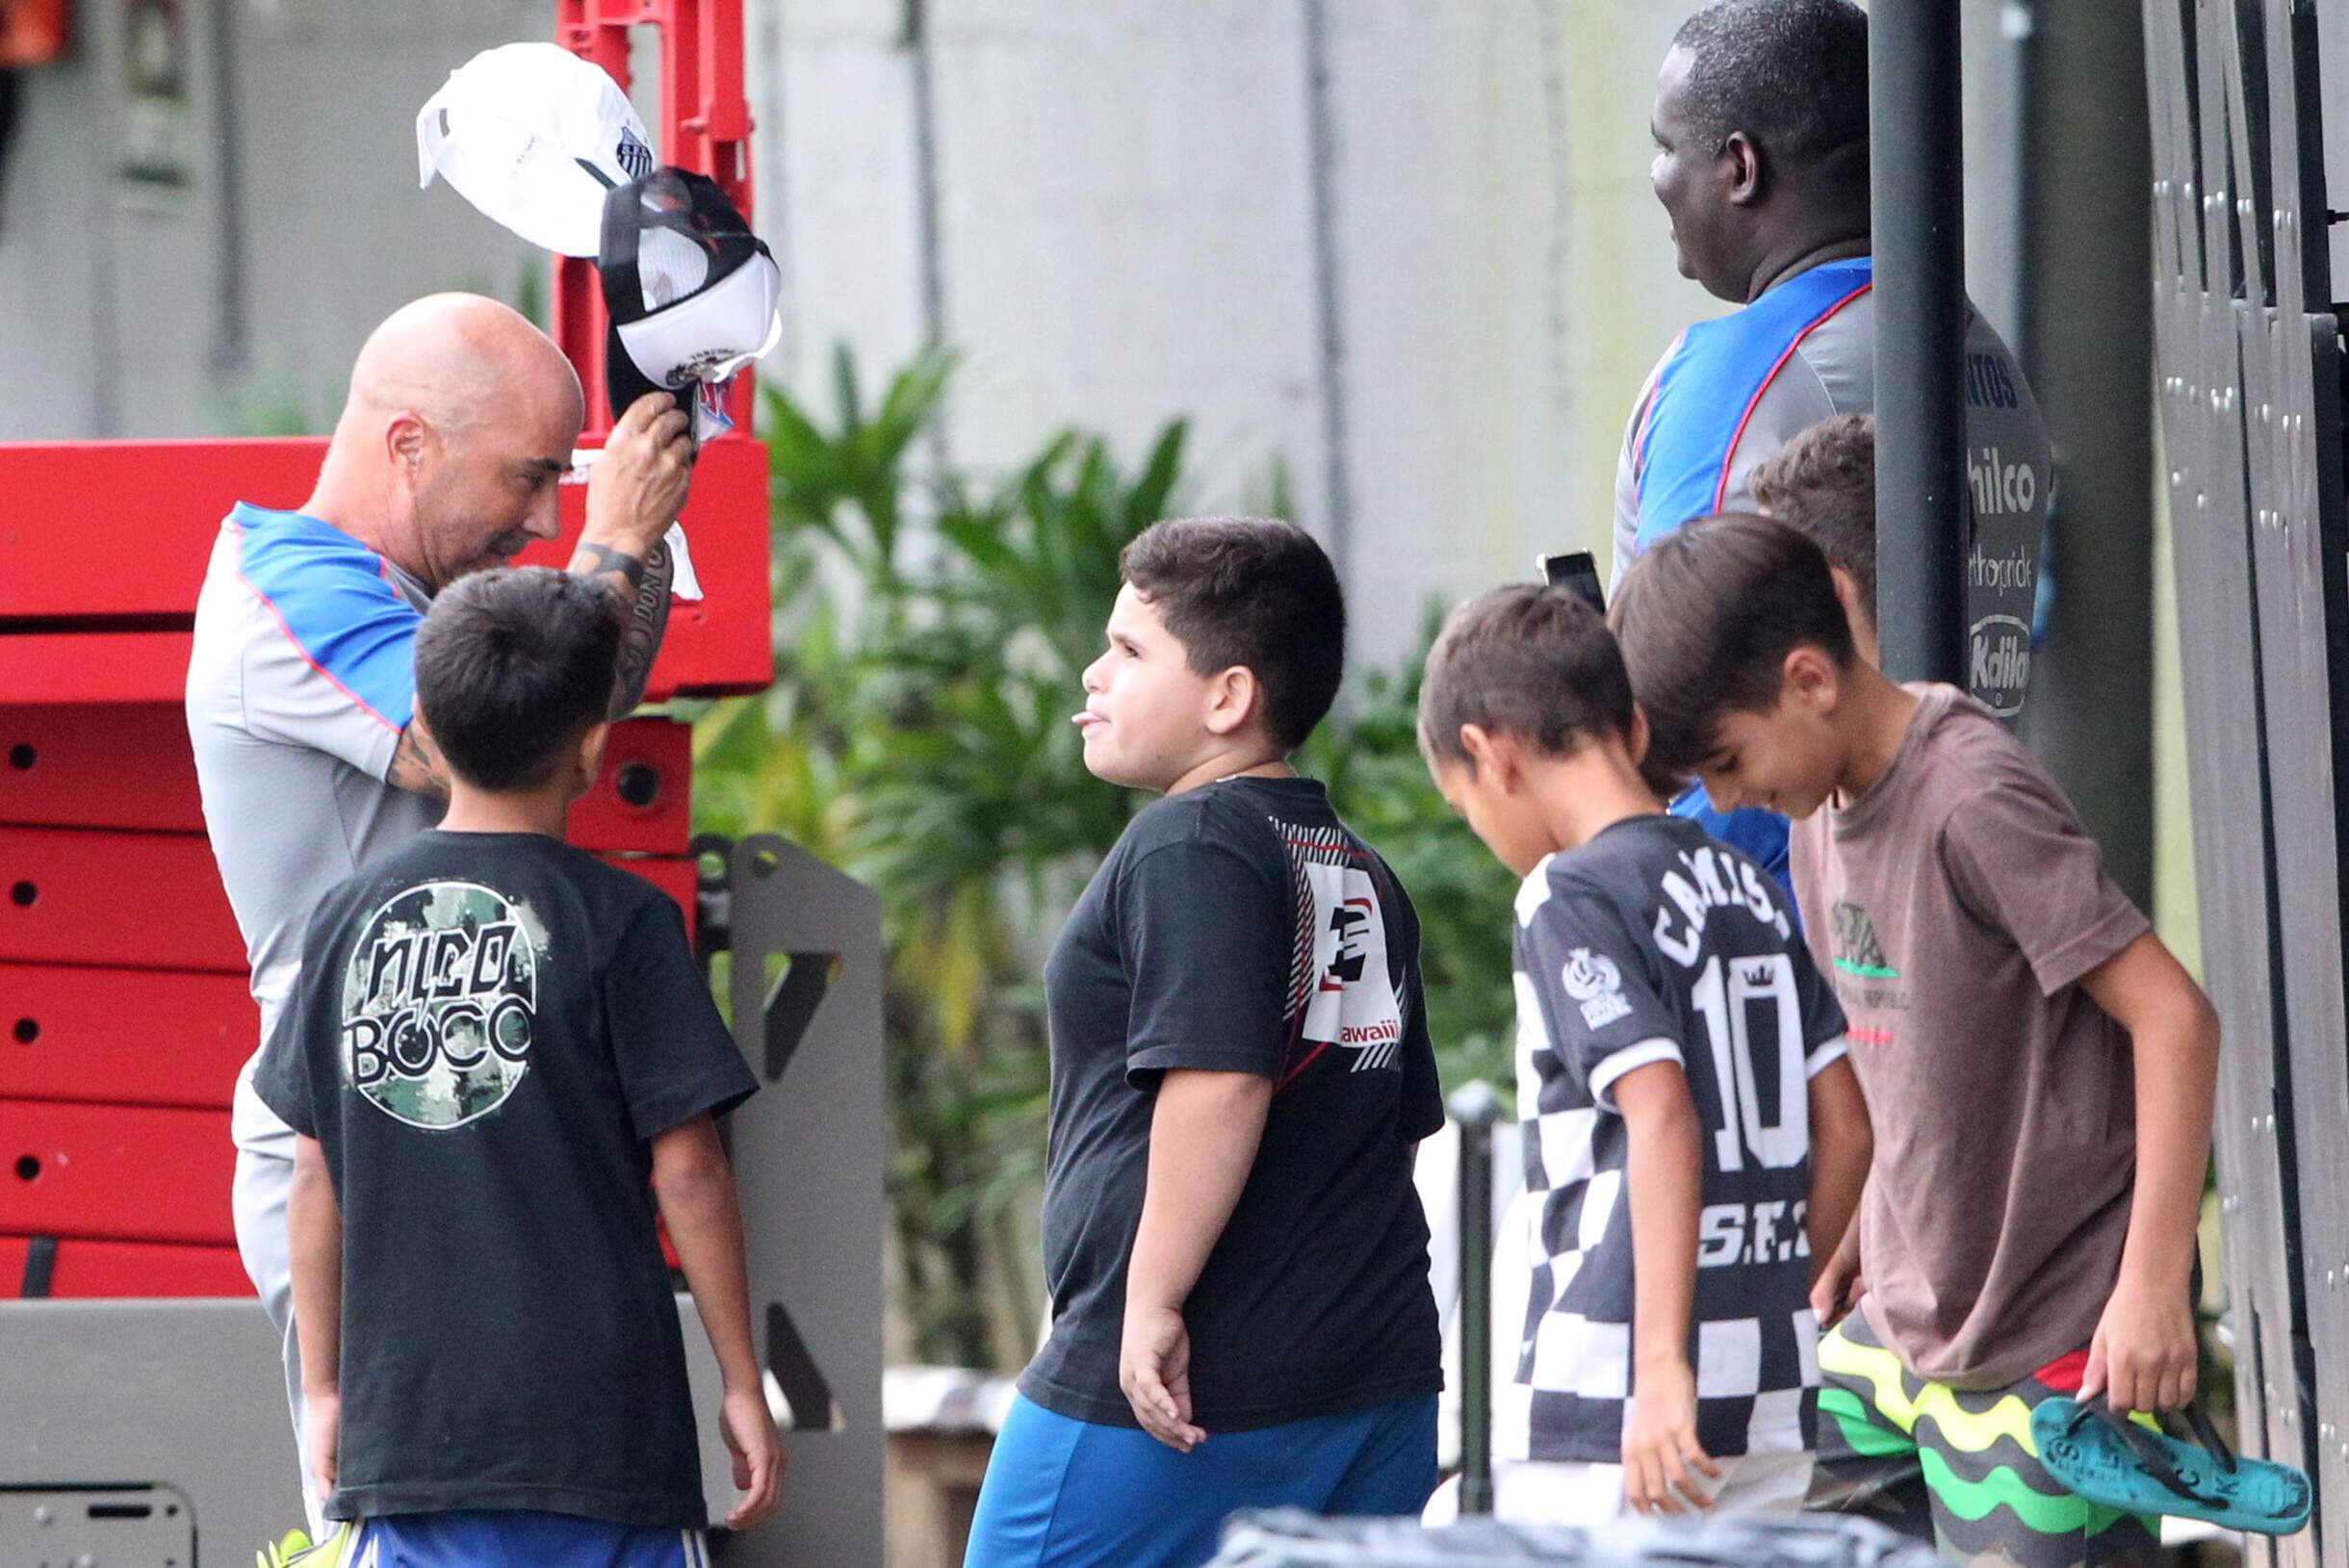 Após ganhar pares de chuteiras de Sampaoli, o grupo de meninos presenteou o treinador com um boné 